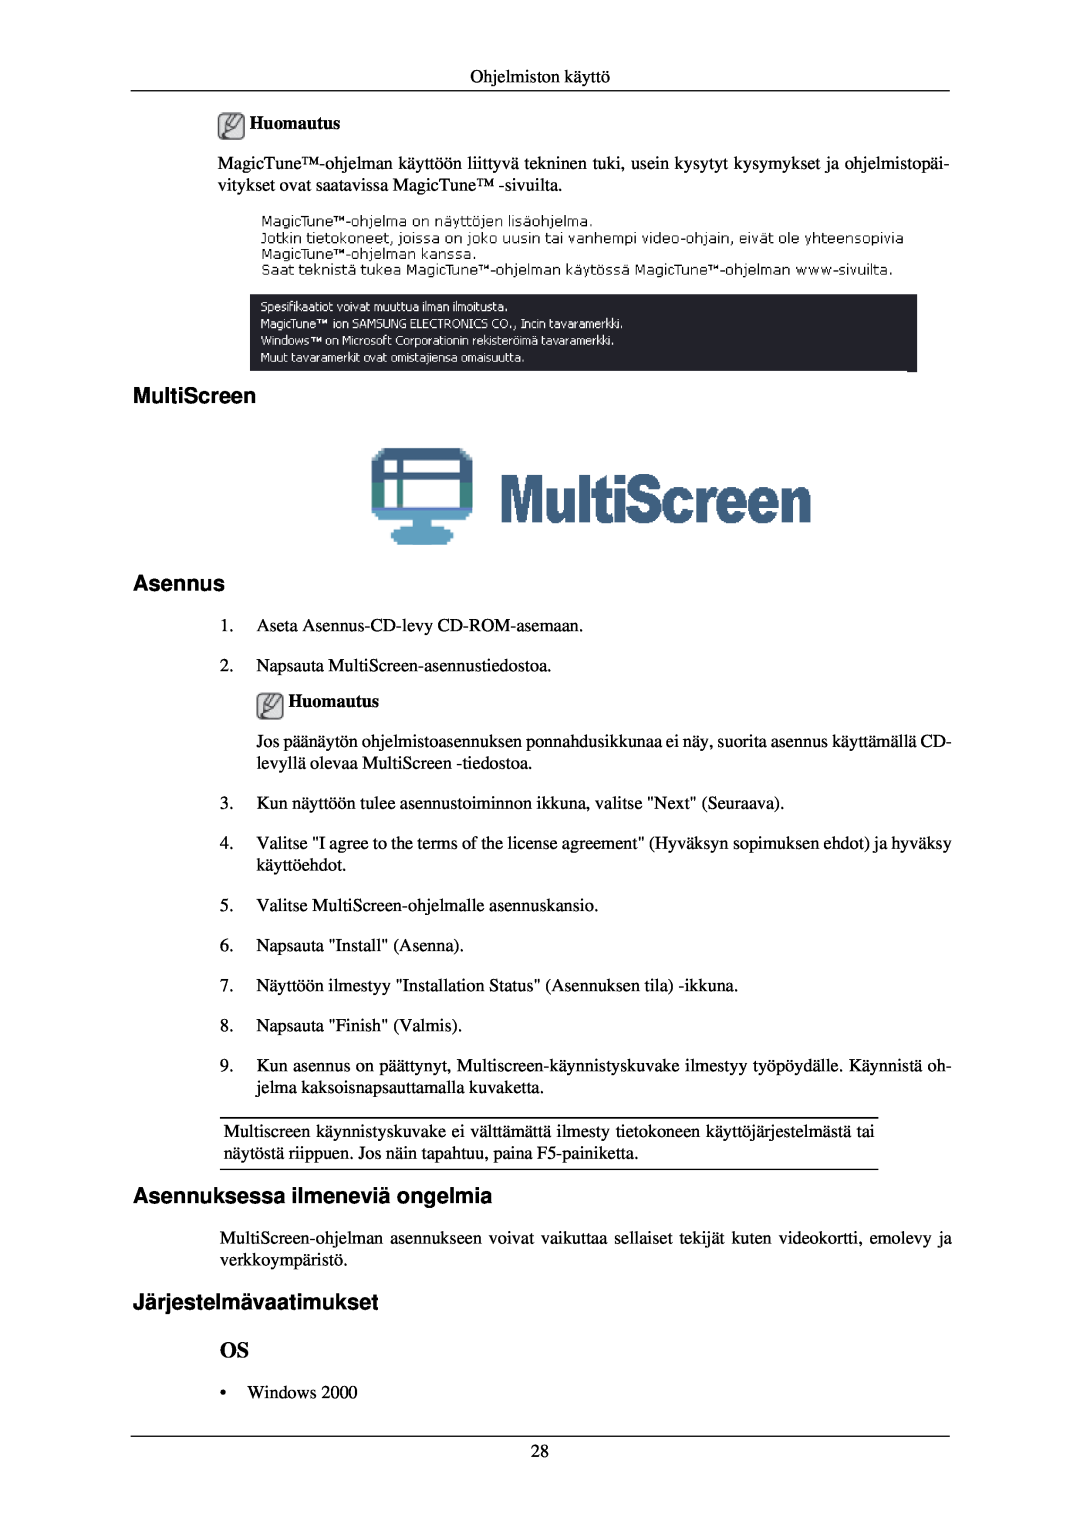 Samsung LS24CMKKFV/EN manual MultiScreen Asennus, Asennuksessa ilmeneviä ongelmia, Järjestelmävaatimukset 